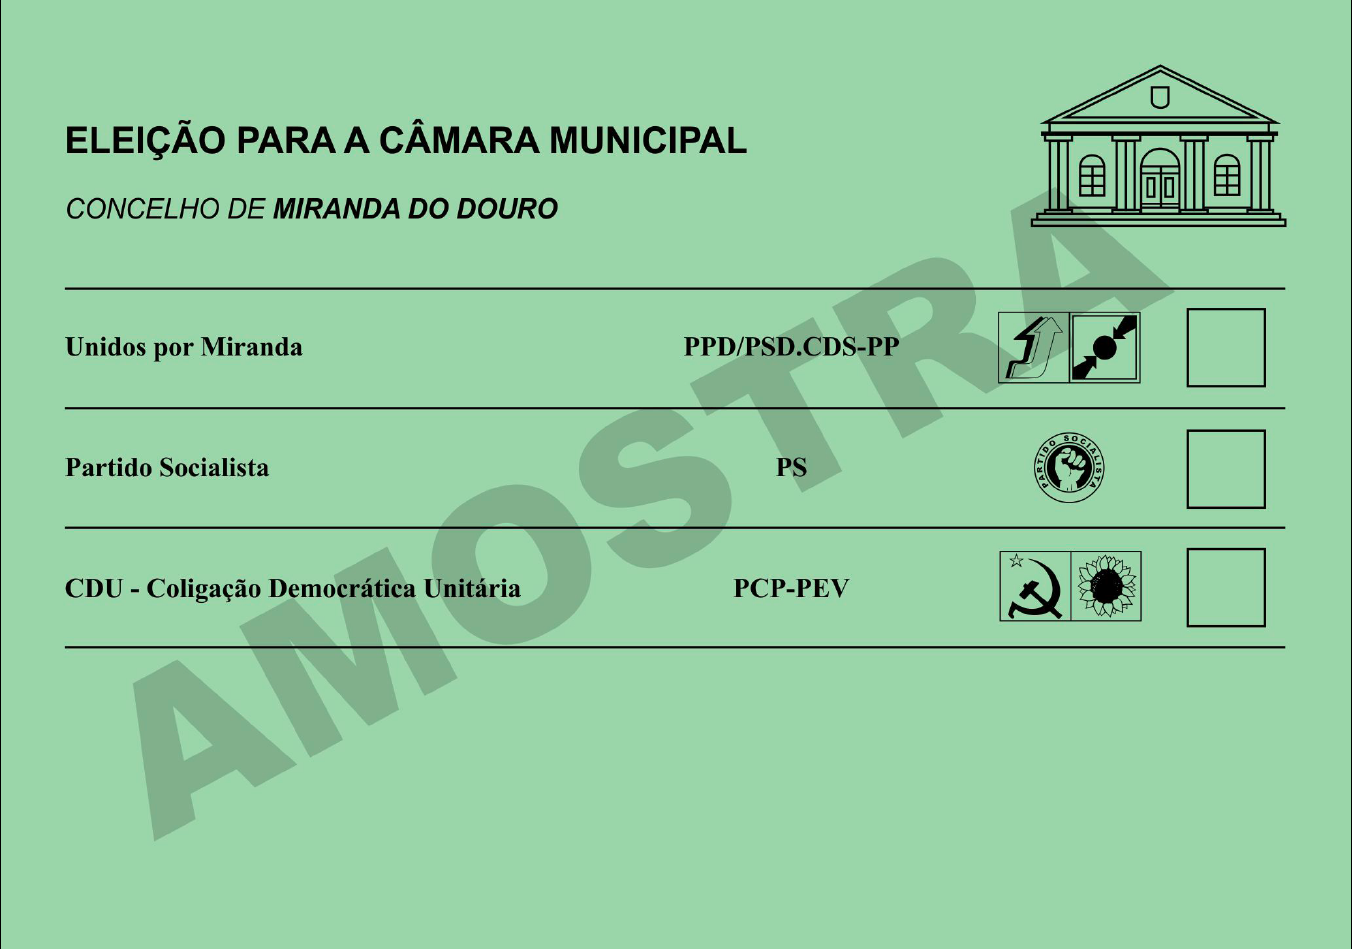 Boletim de voto - Câmara Municipal